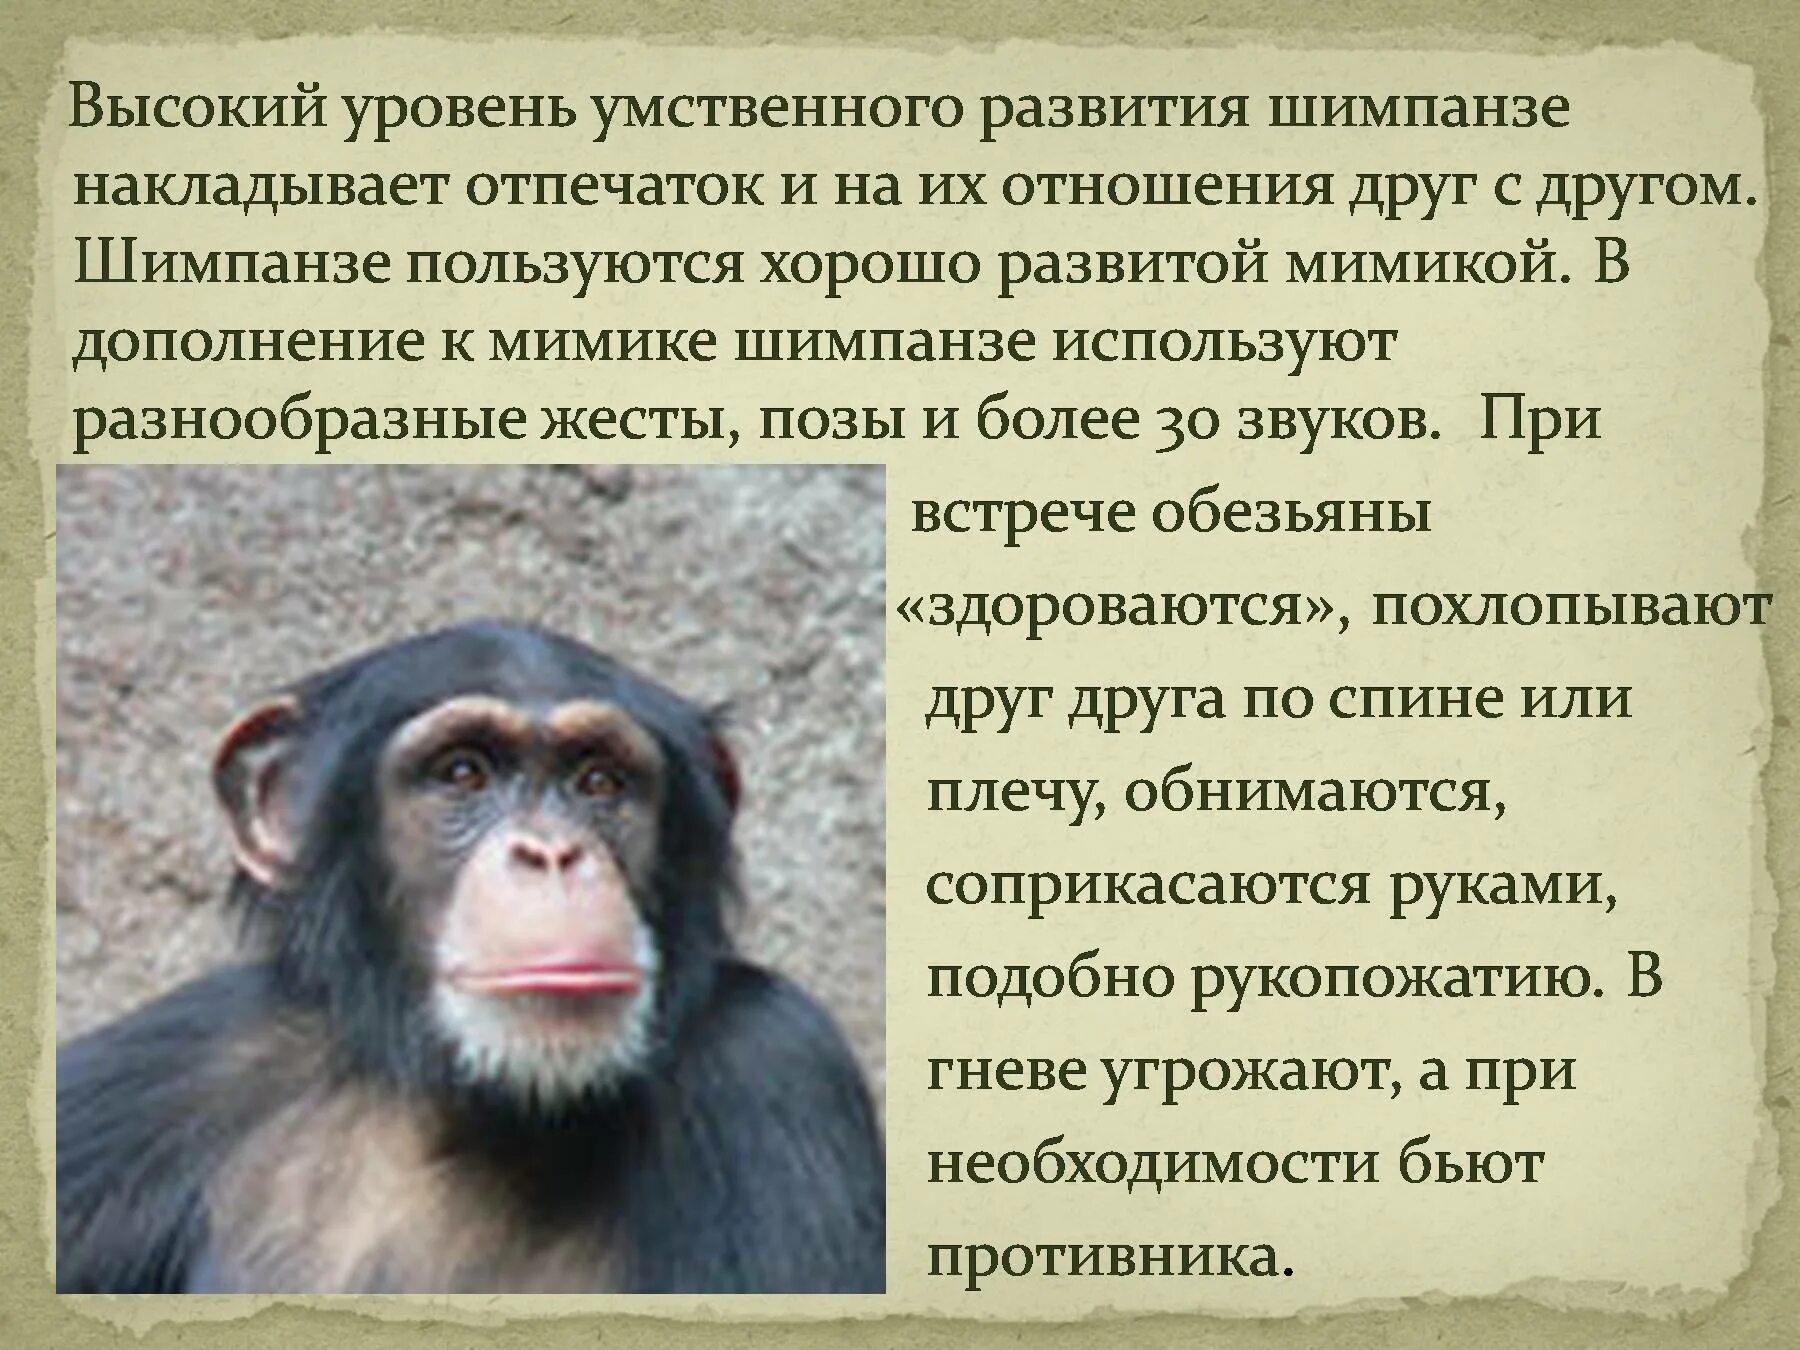 Шимпанзе прилагательное по смыслу. Интересные факты про обезьян. Интересные факты о шимпанзе. Описание обезьяны. Статью об обезьянах.